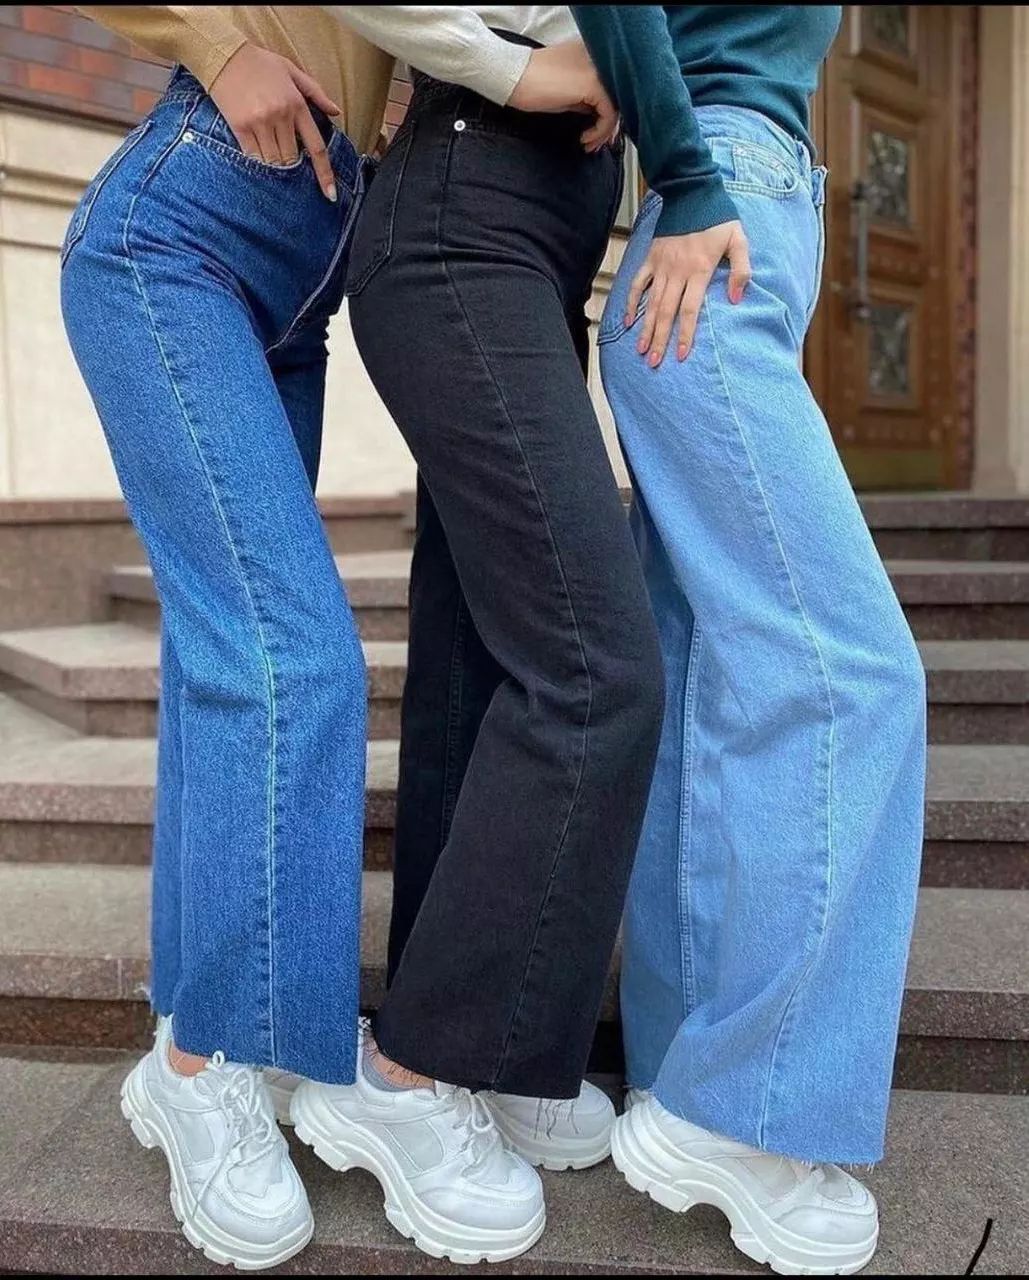 Прямые широкие джинсы с необработанным низом / Фото - instagram